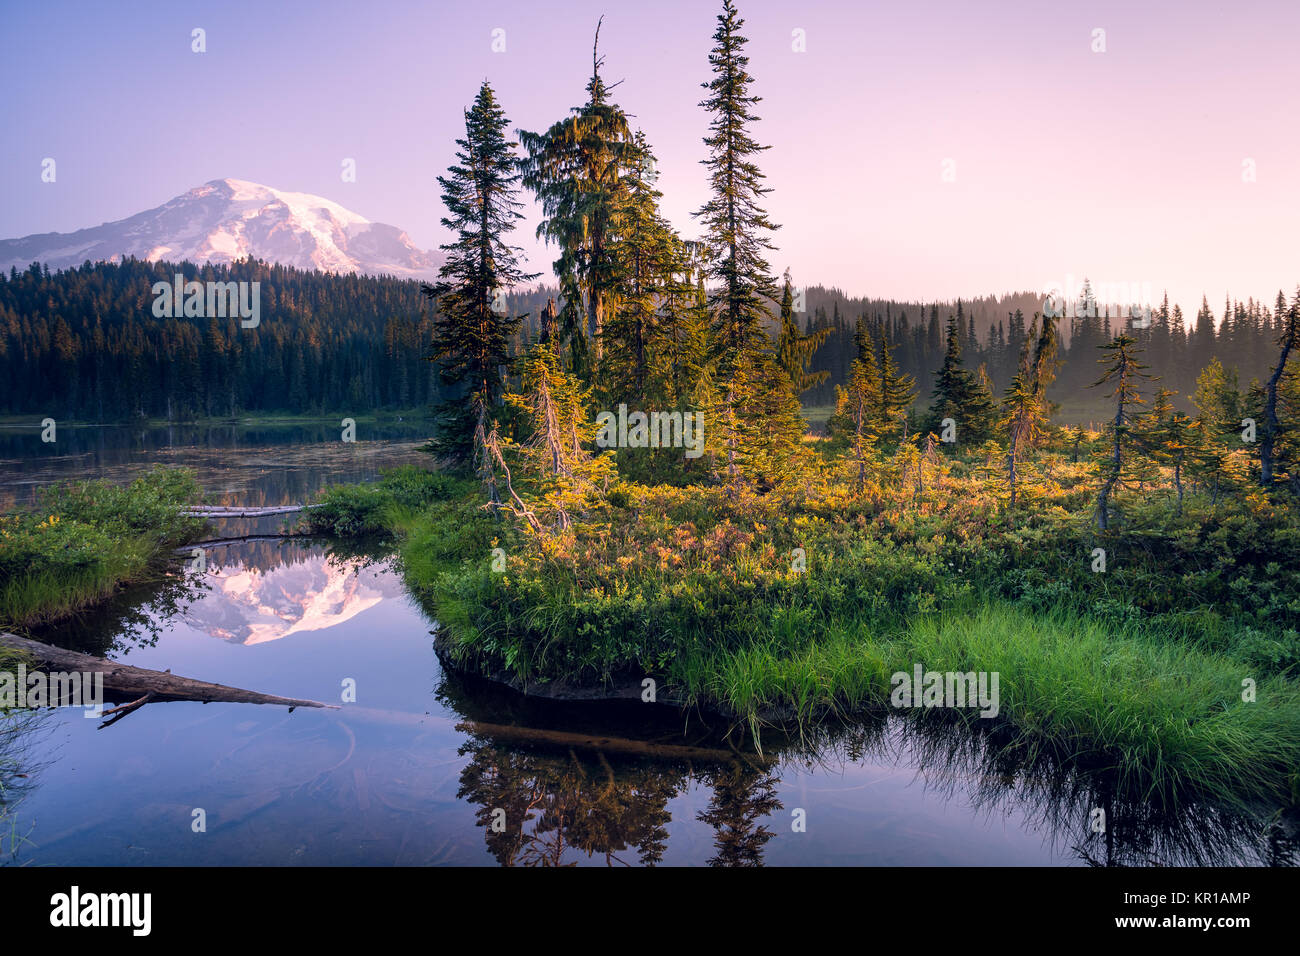 Mountain landscape at sunrise, Mount Rainer National Park, Washington, United States Stock Photo